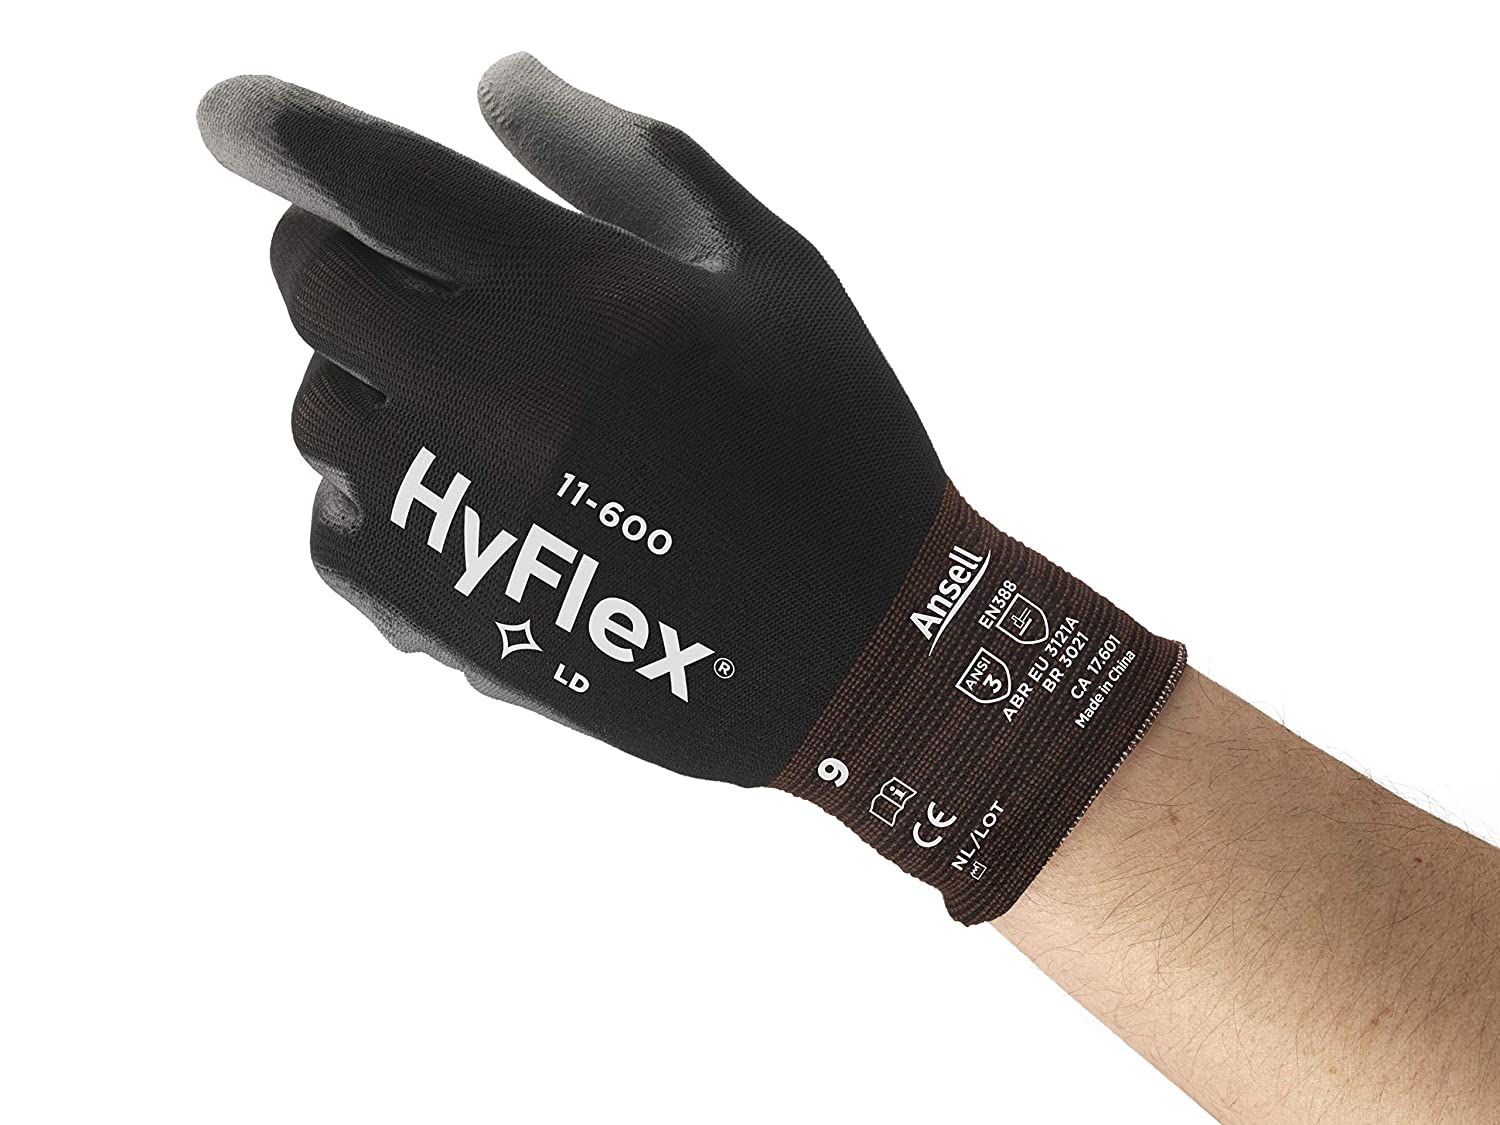 Anticorte Hyflex 11-600